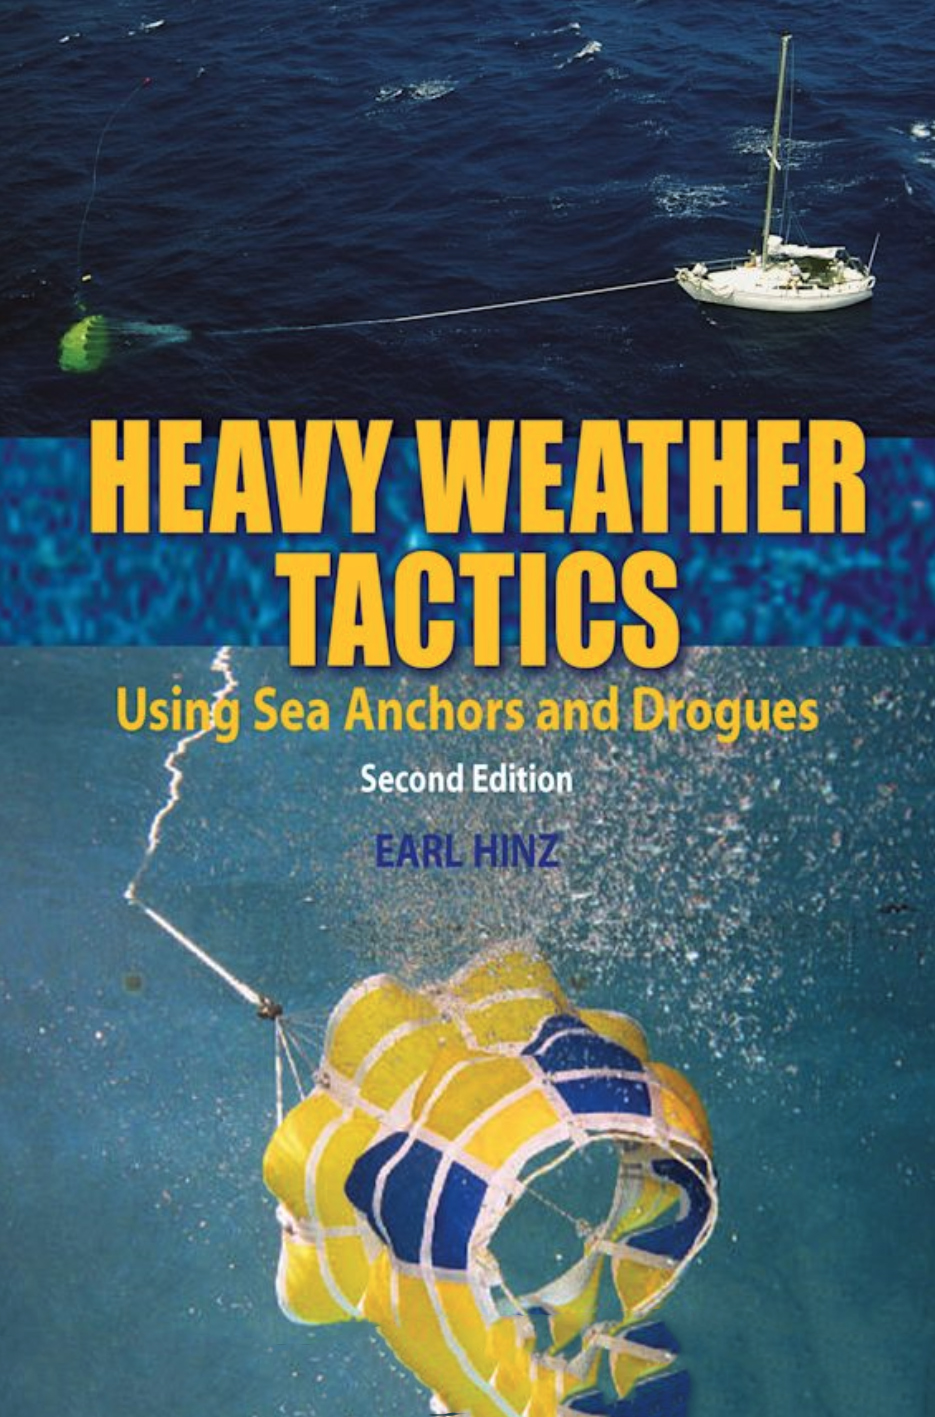 Heavy weather tactics